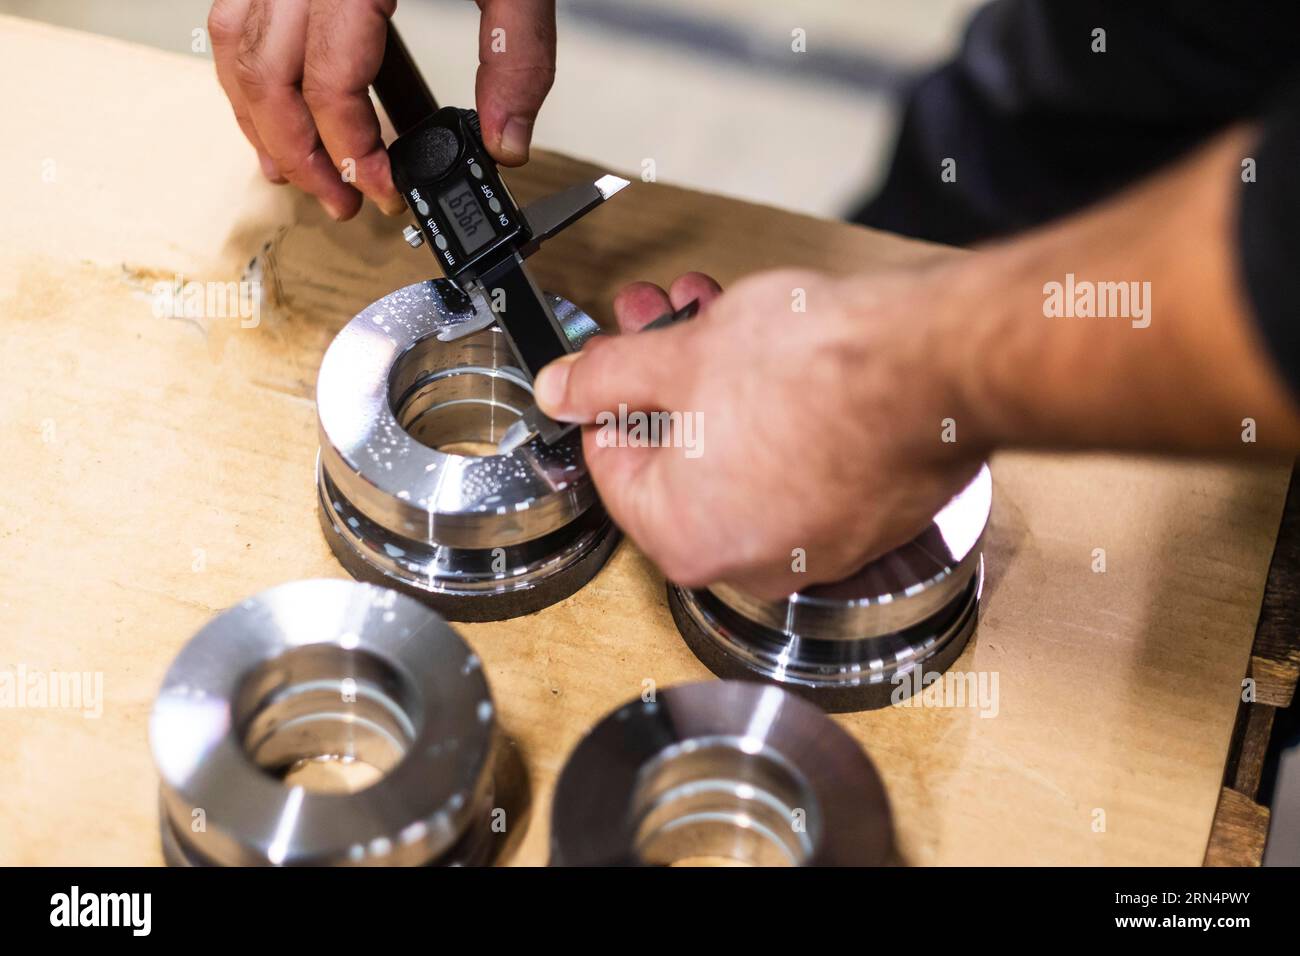 Ein Mann verwendet einen digitalen Messschieber, um die Größe einer Öffnung in einem Metallteil zu messen Stockfoto